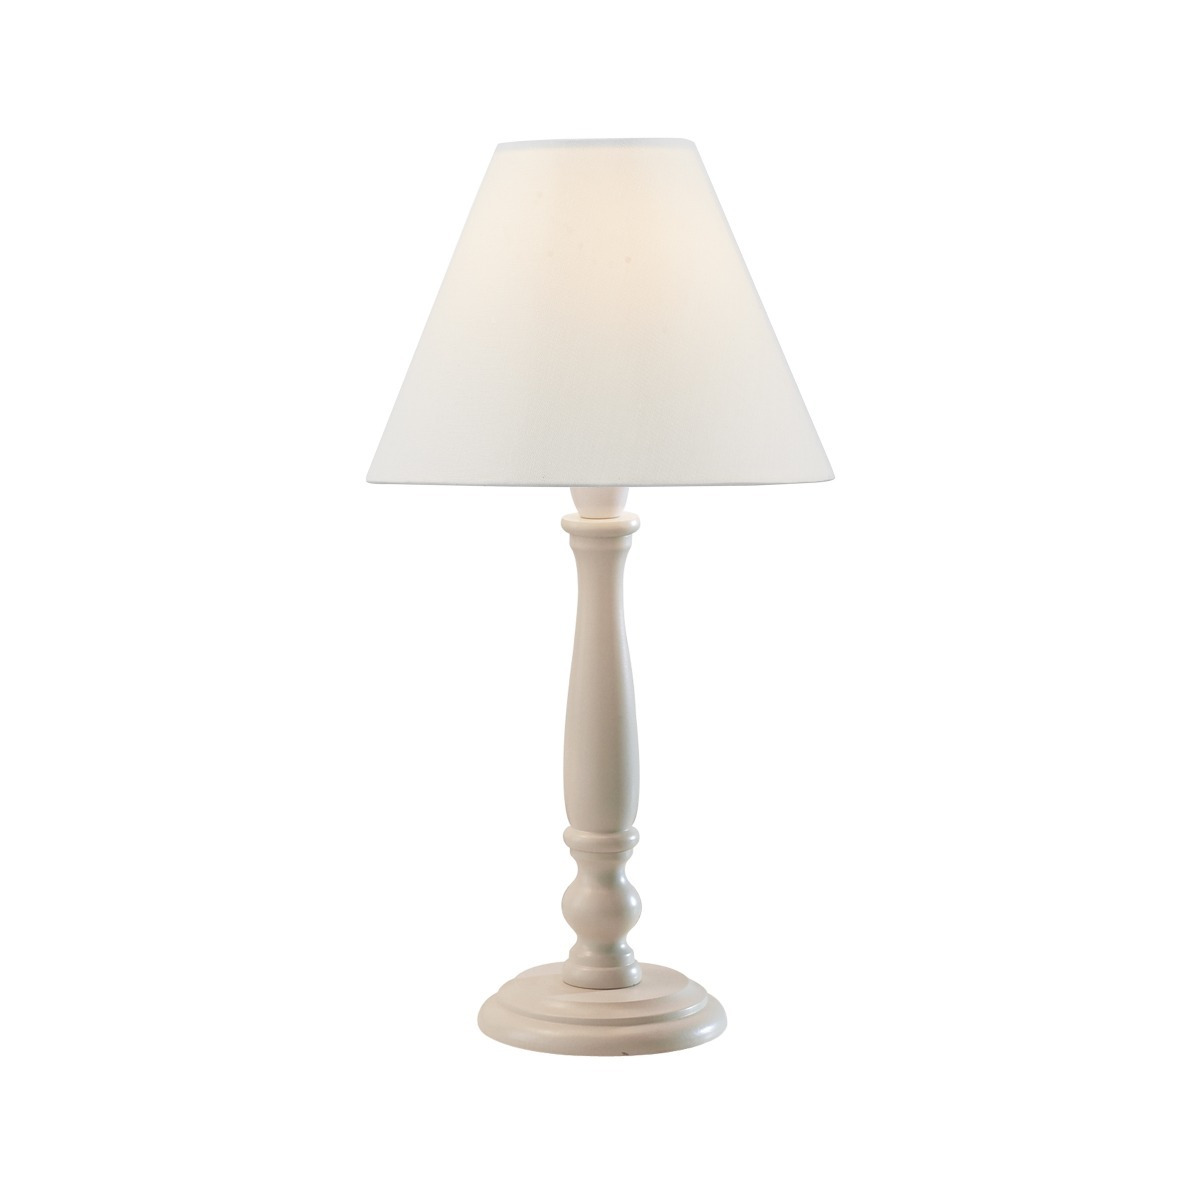 REG4233 Regal Small Cream Table Lamp